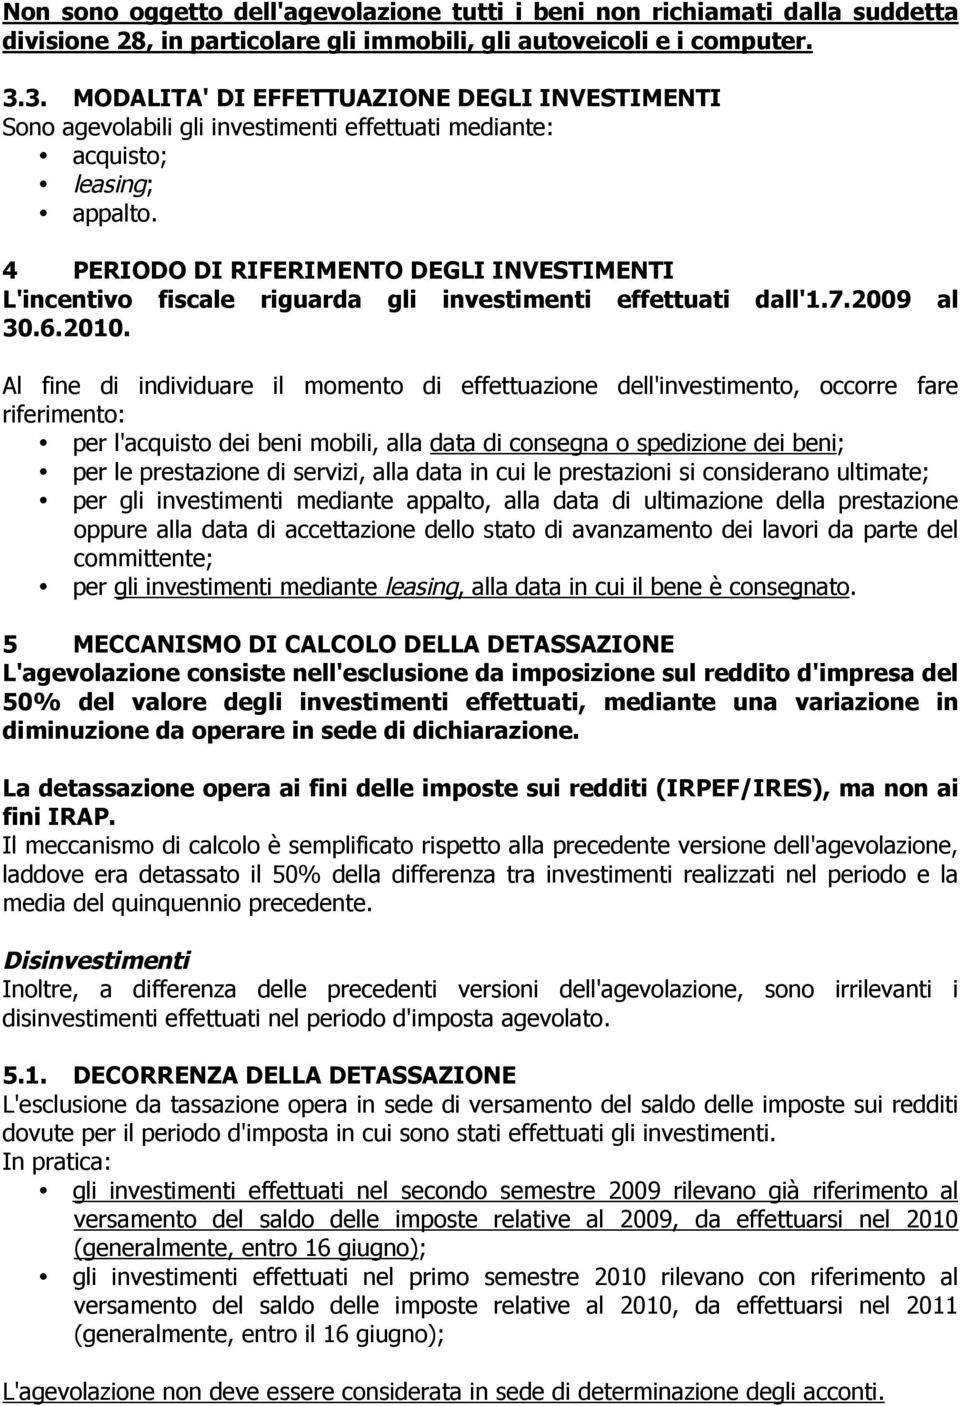 4 PERIODO DI RIFERIMENTO DEGLI INVESTIMENTI L'incentivo fiscale riguarda gli investimenti effettuati dall'1.7.2009 al 30.6.2010.